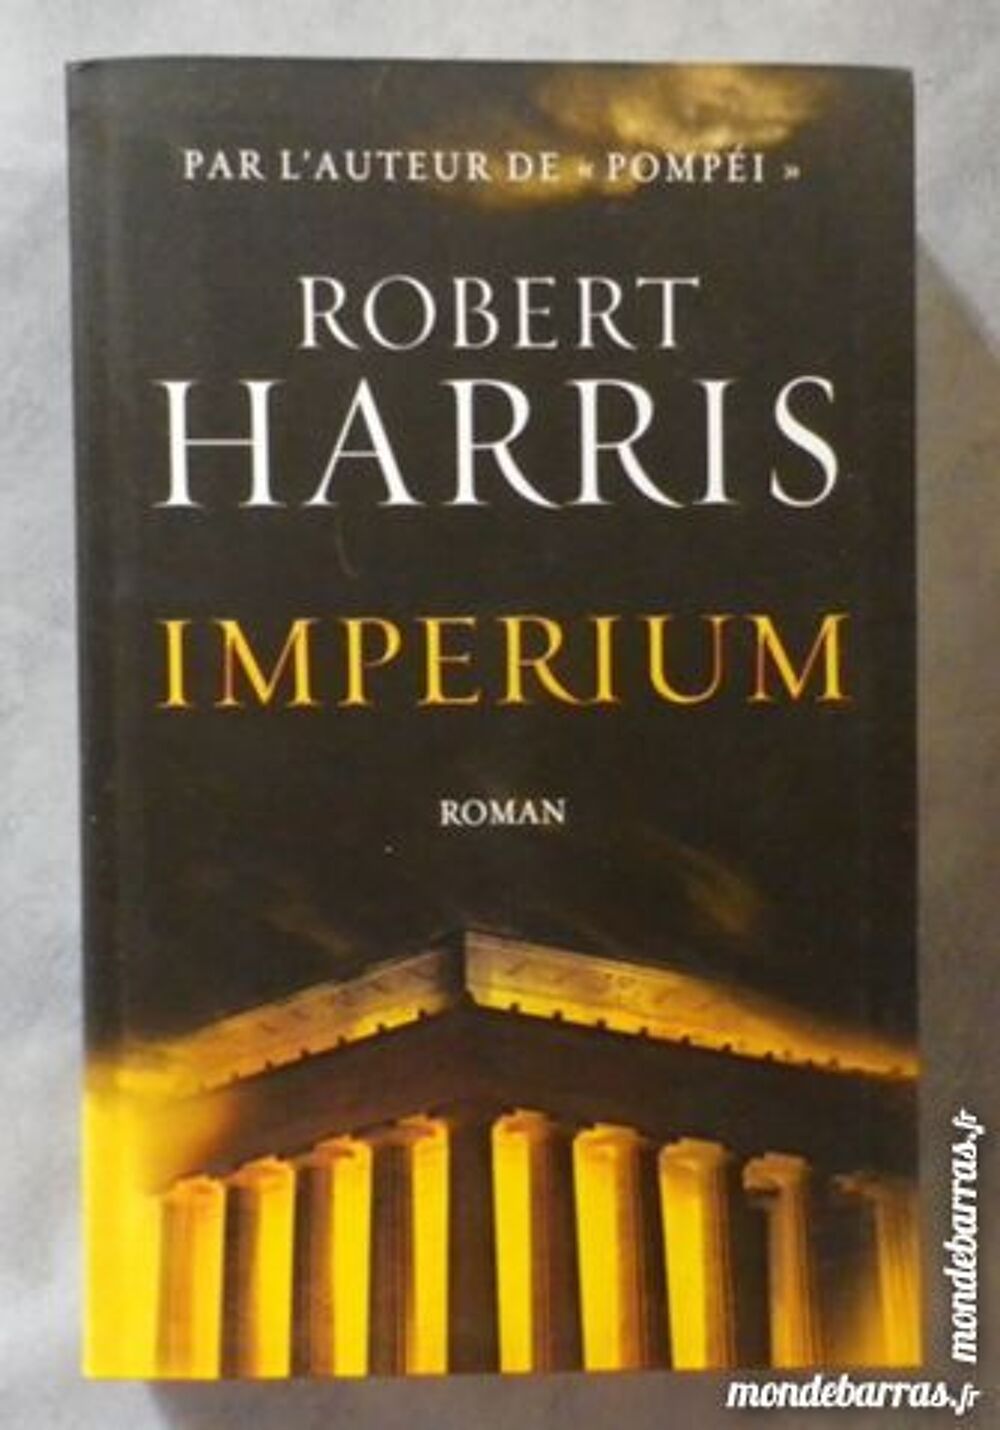 IMPERIUM de RObert HARRIS Le Grand Livre du Mois Livres et BD